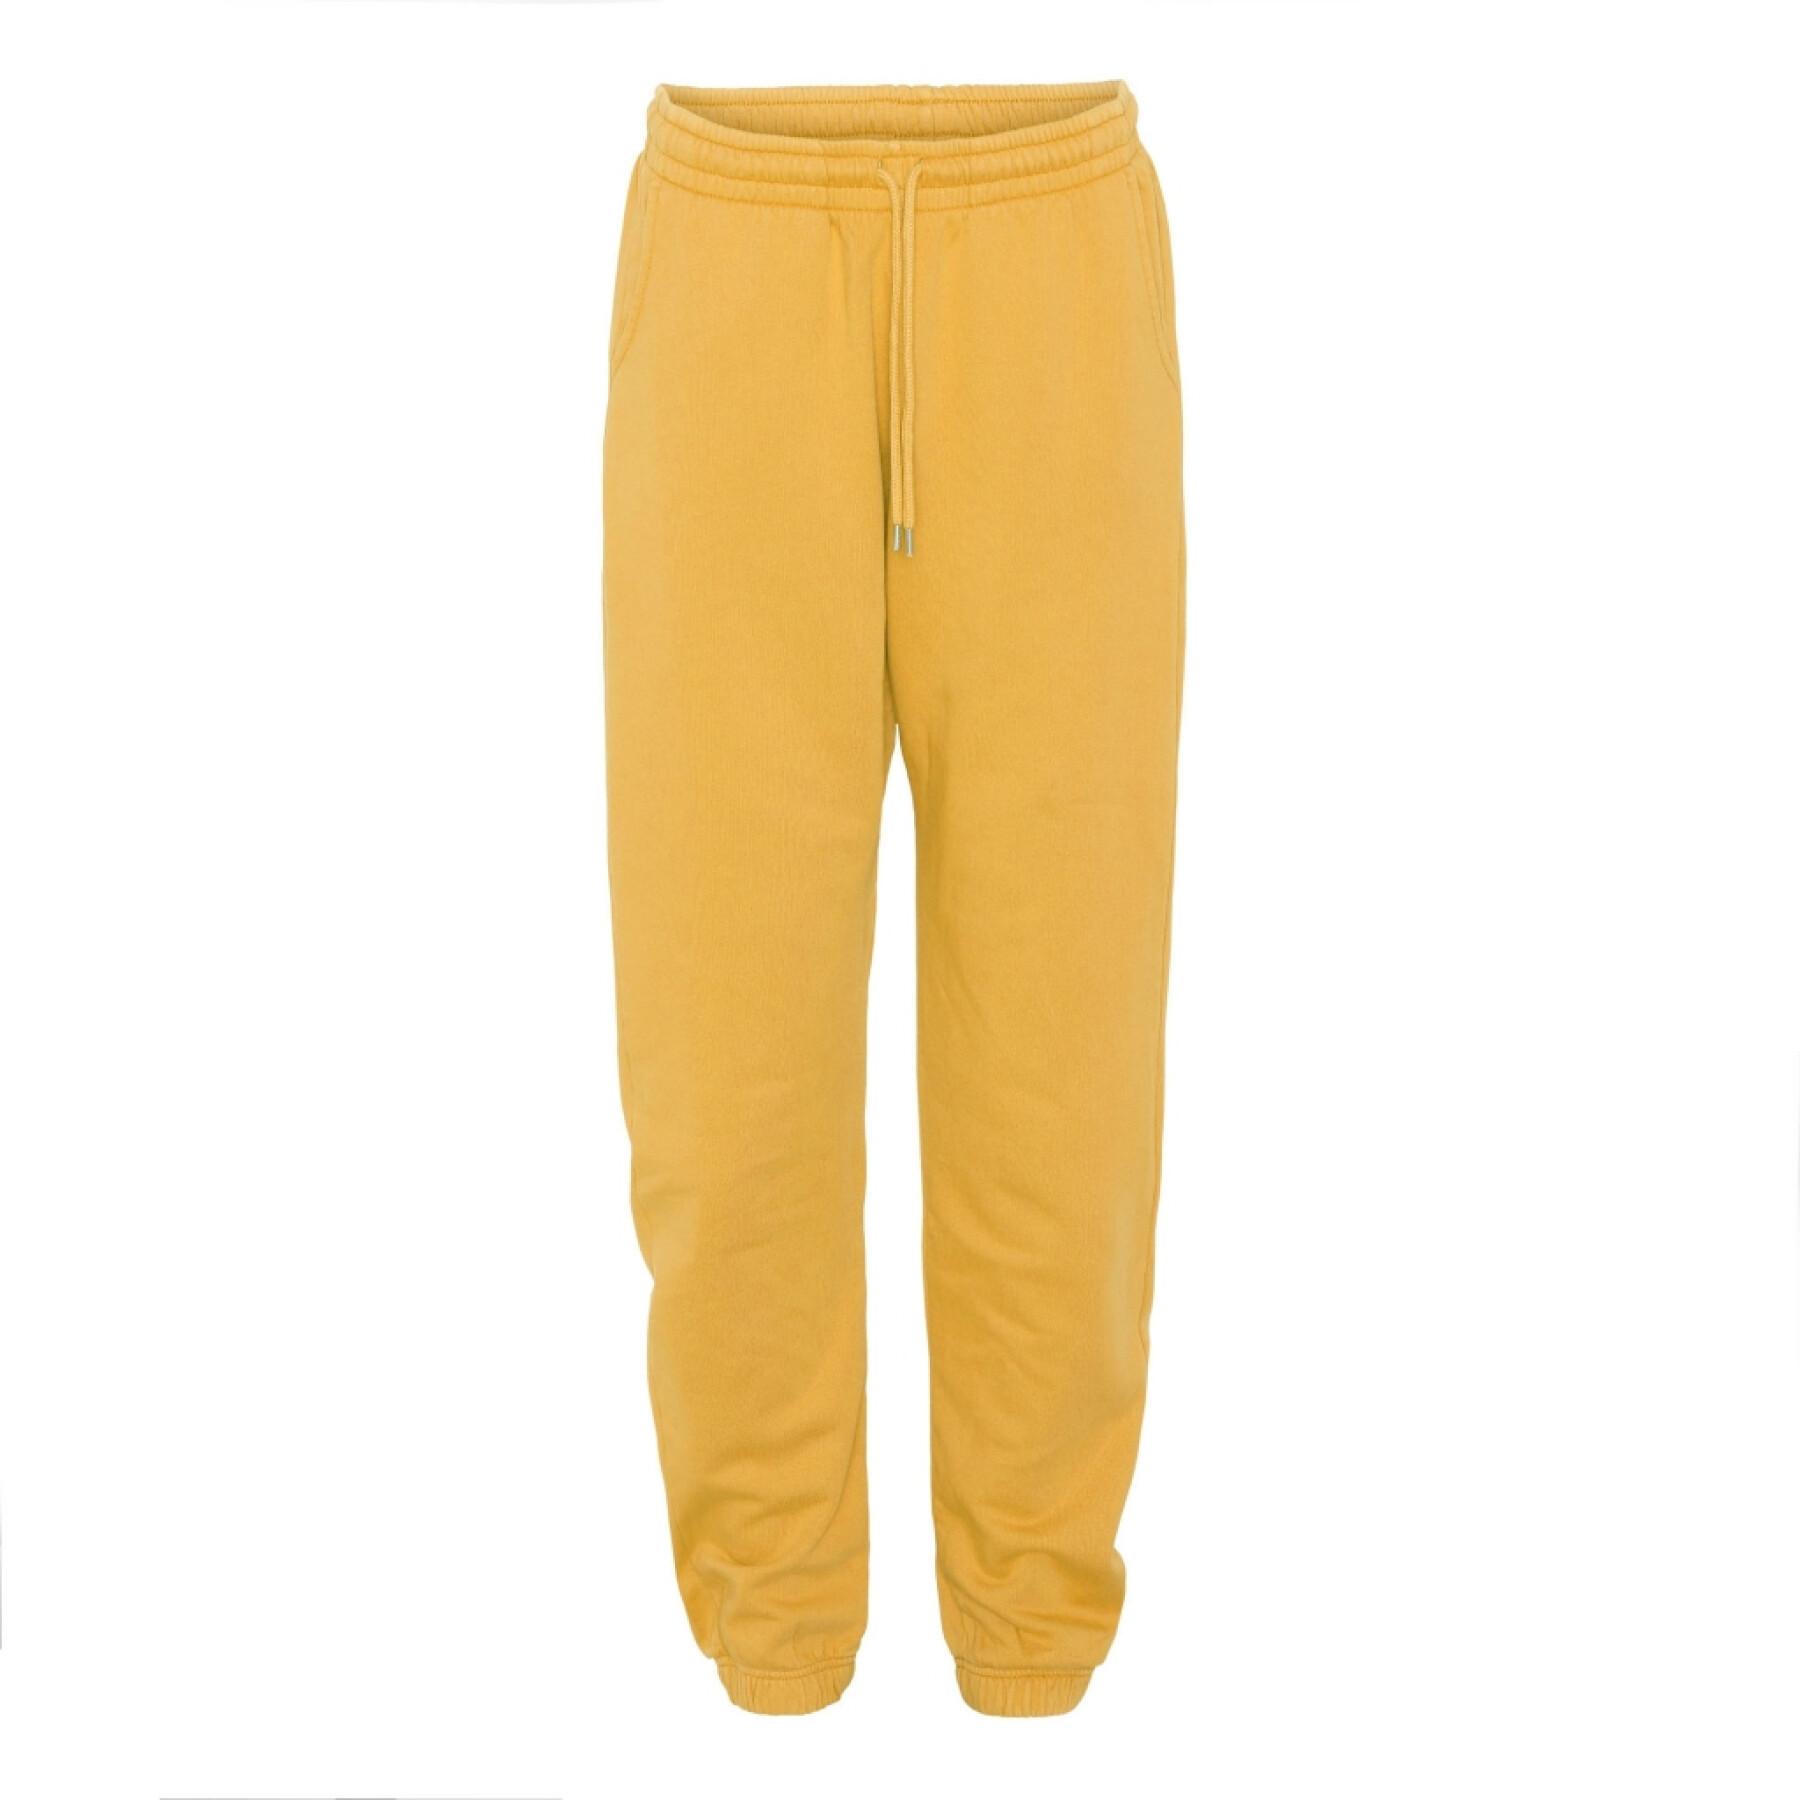 Pantalón de jogging Colorful Standard amarillo tostado